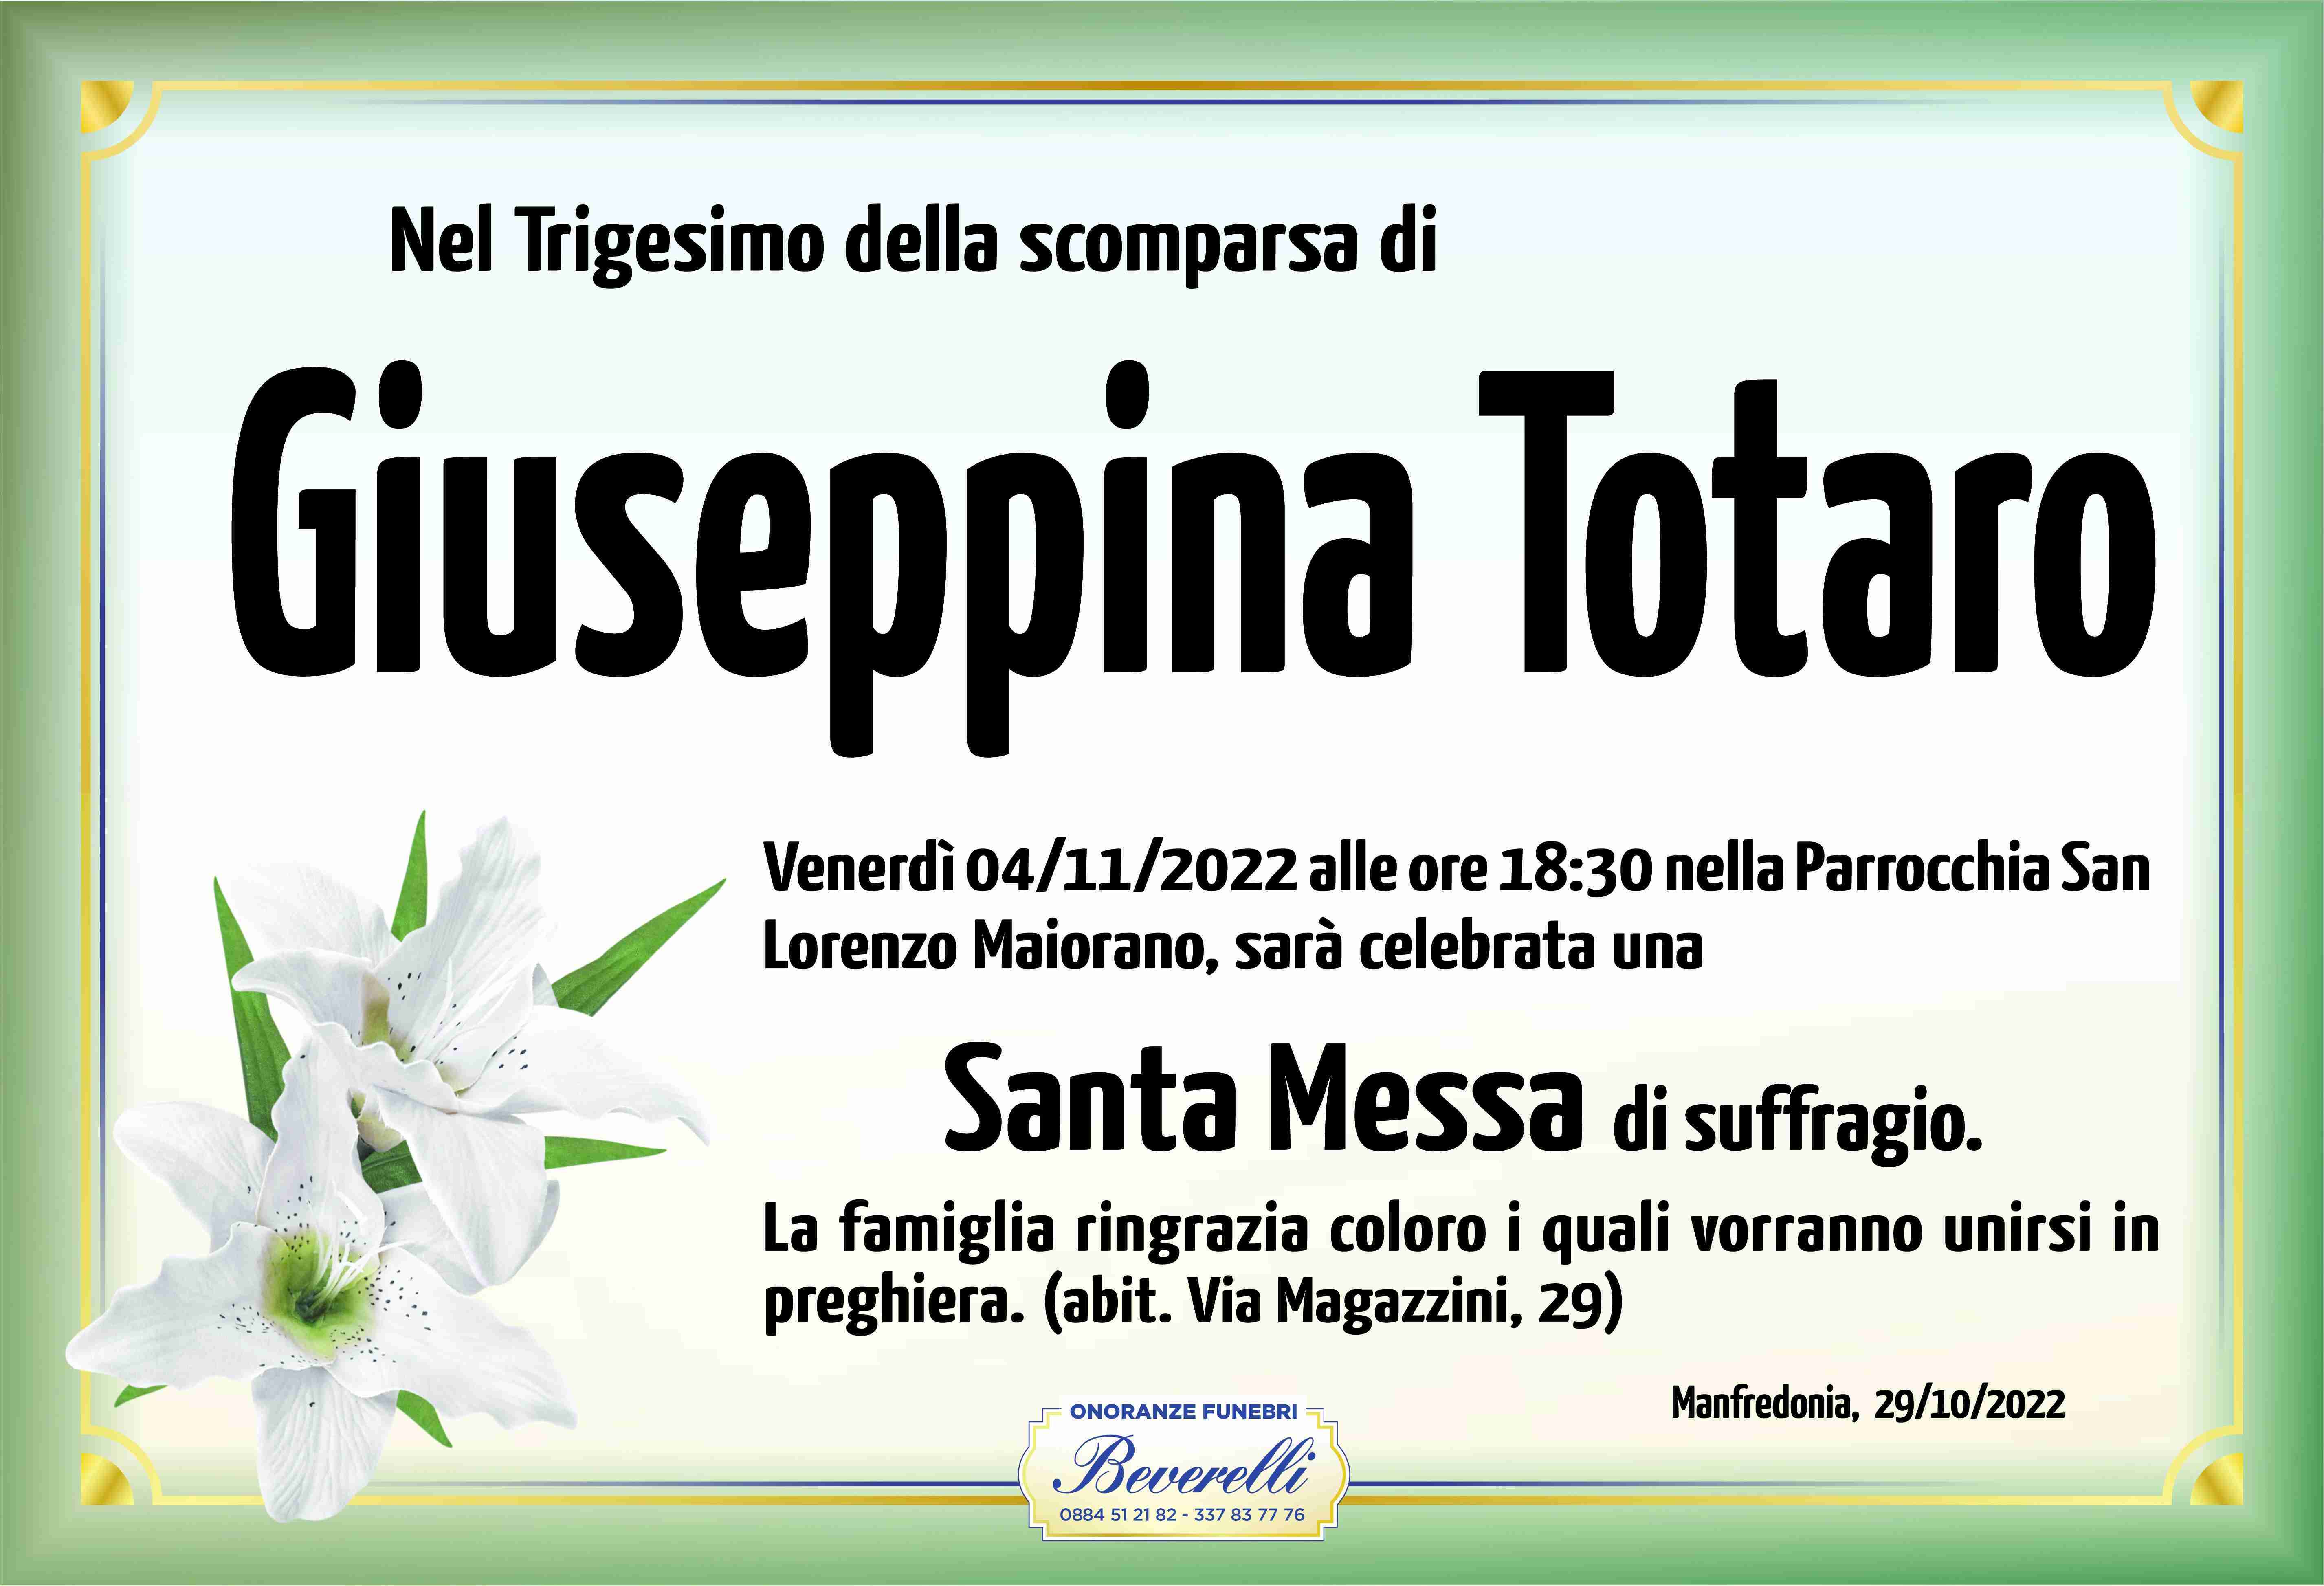 Giuseppina Totaro